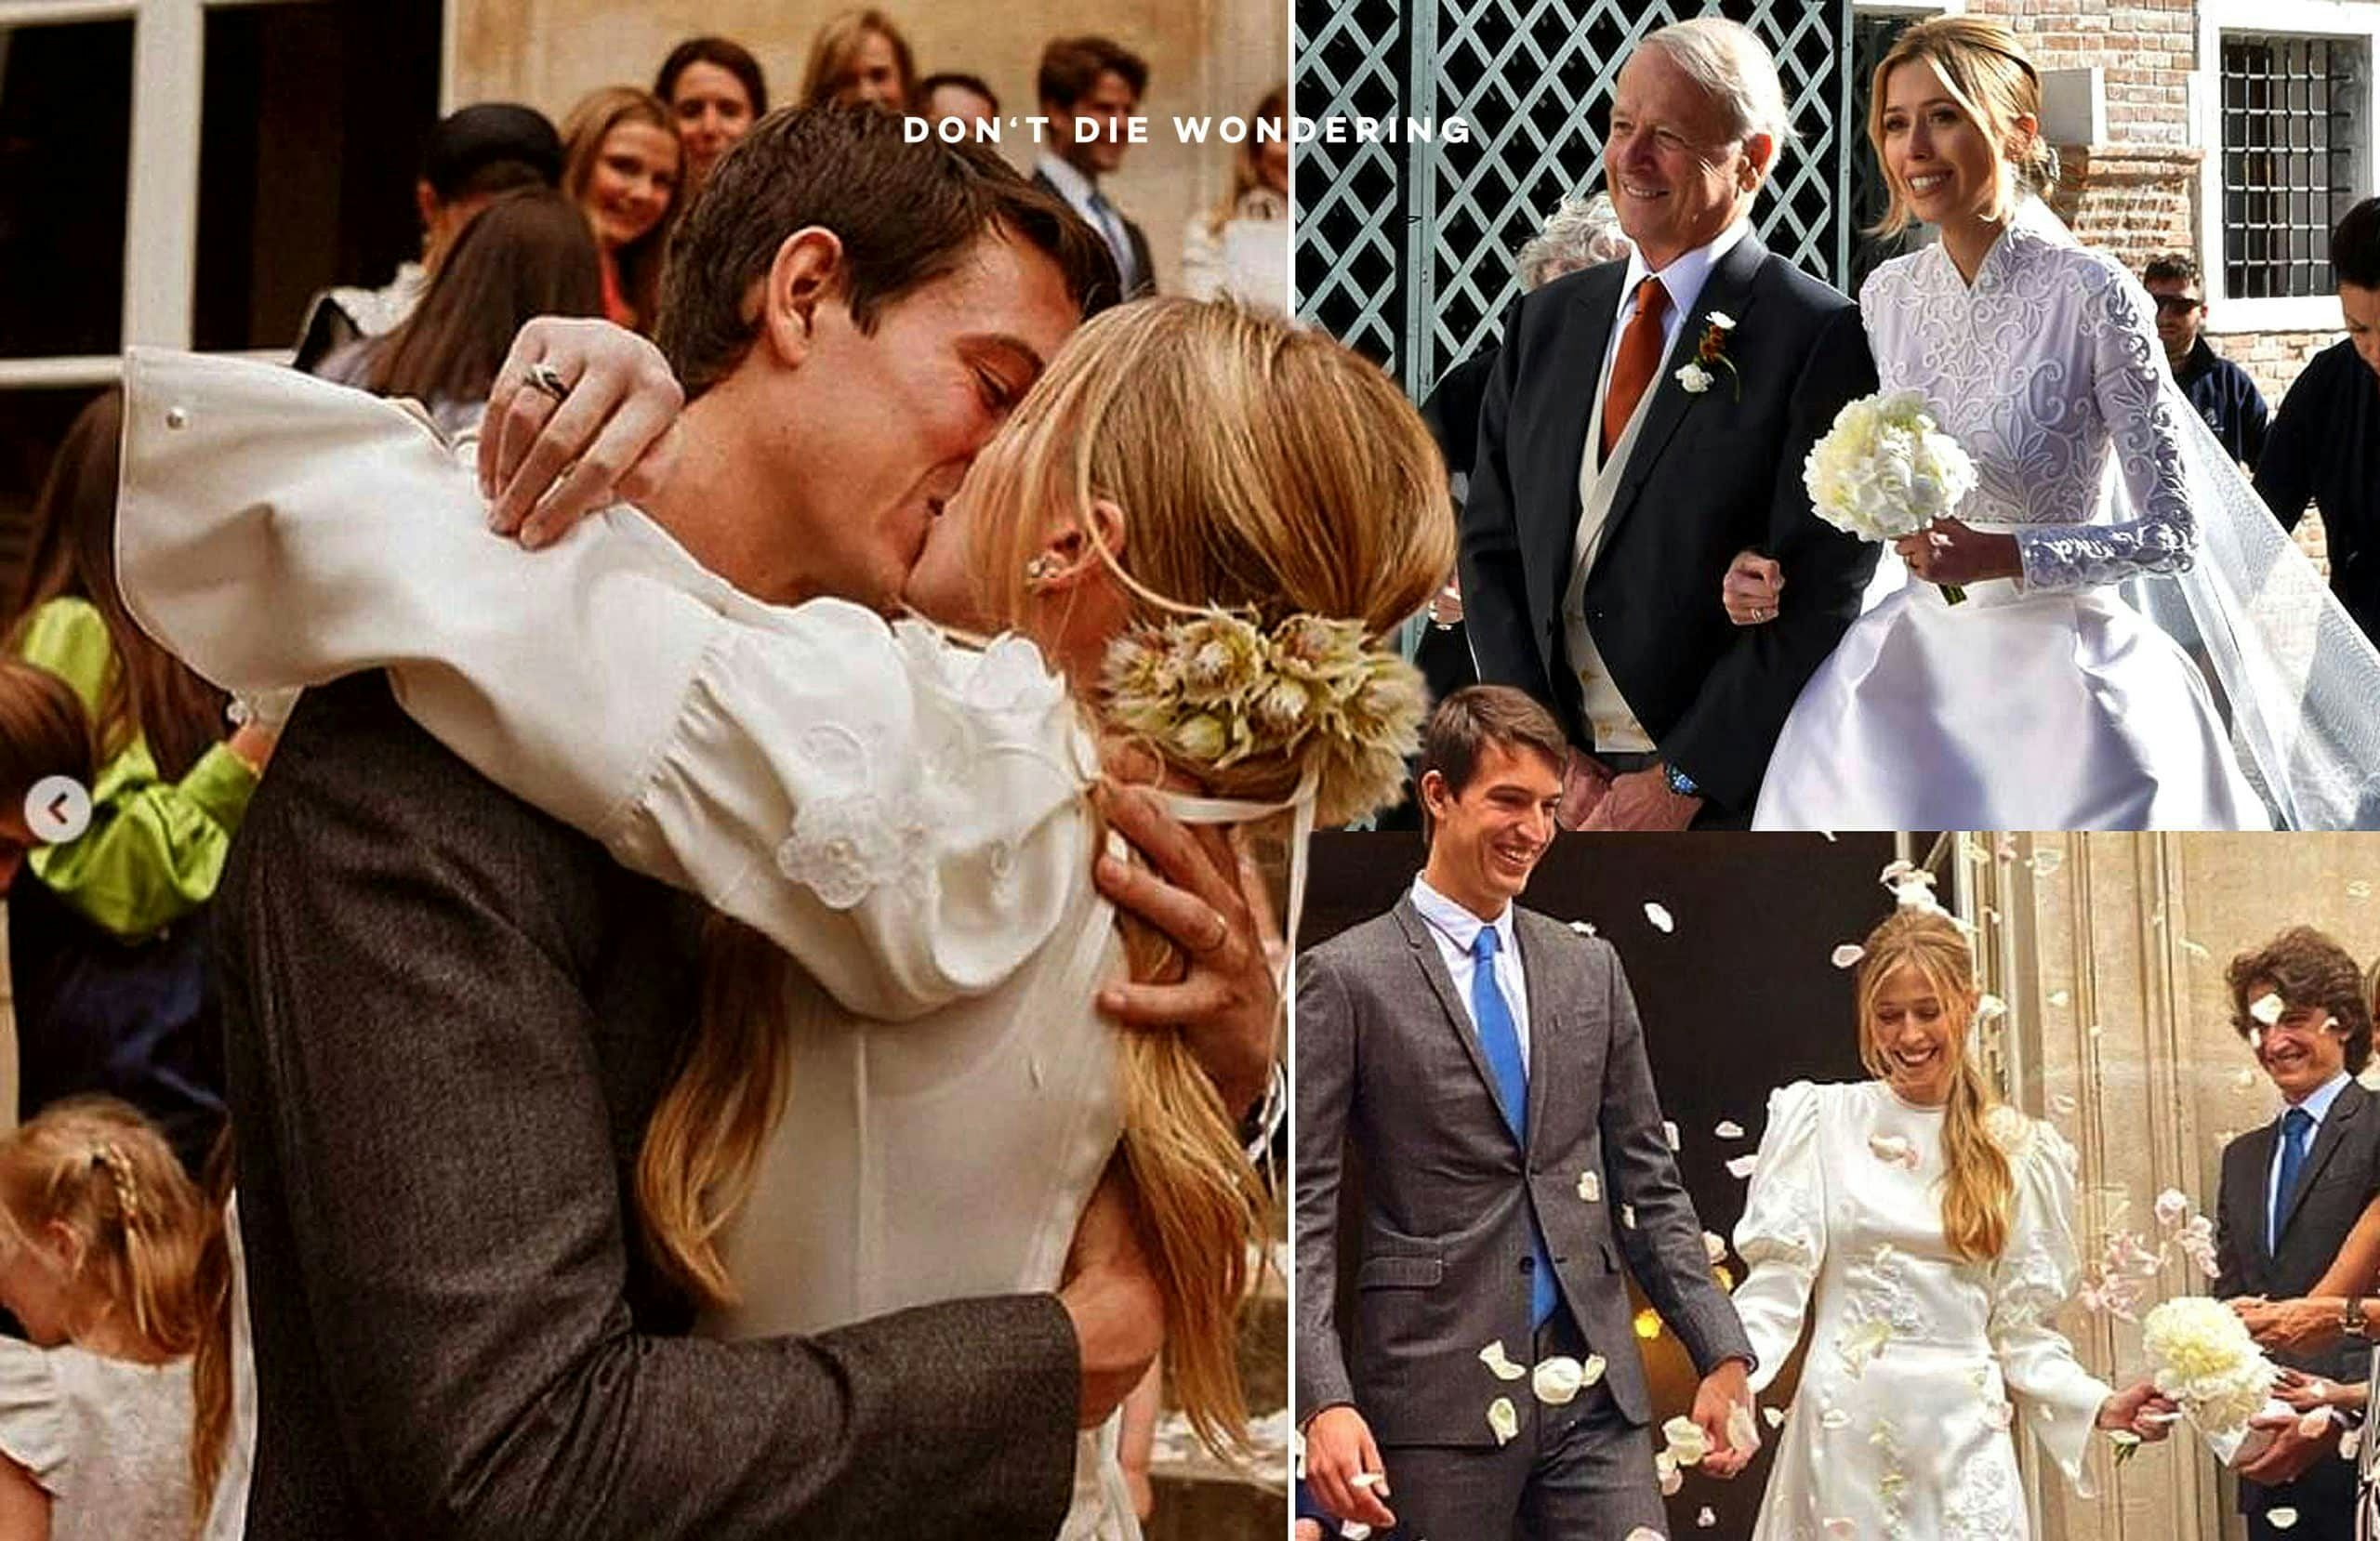 Roger Federer attends Alexandre Arnault's wedding alongside Beyonce, Jay-Z,  Pharrell and more